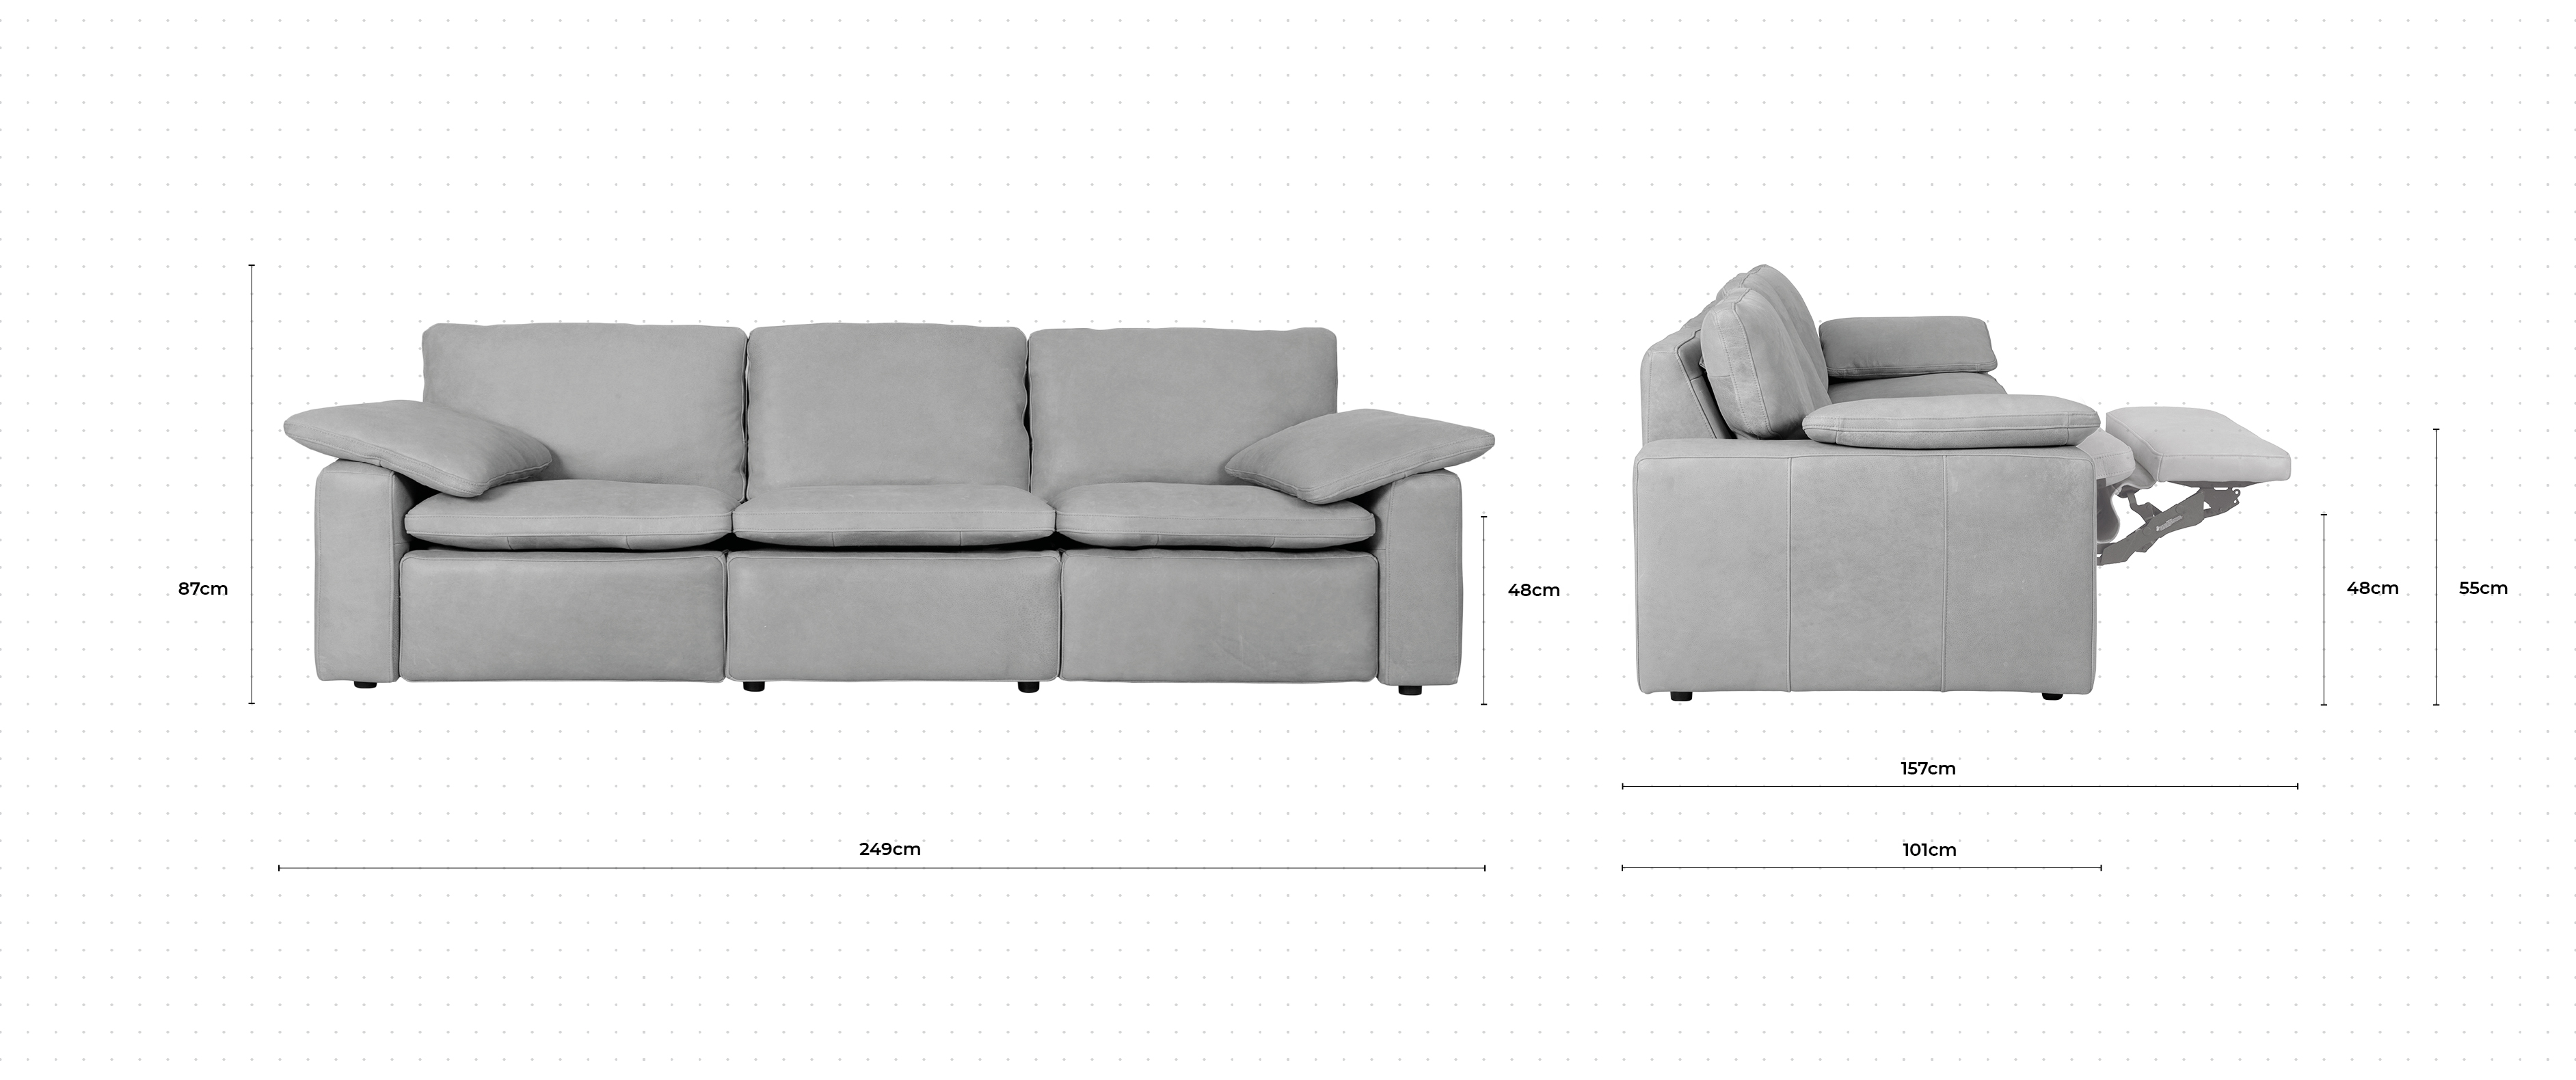 Martin 3 Seater Sofa dimensions